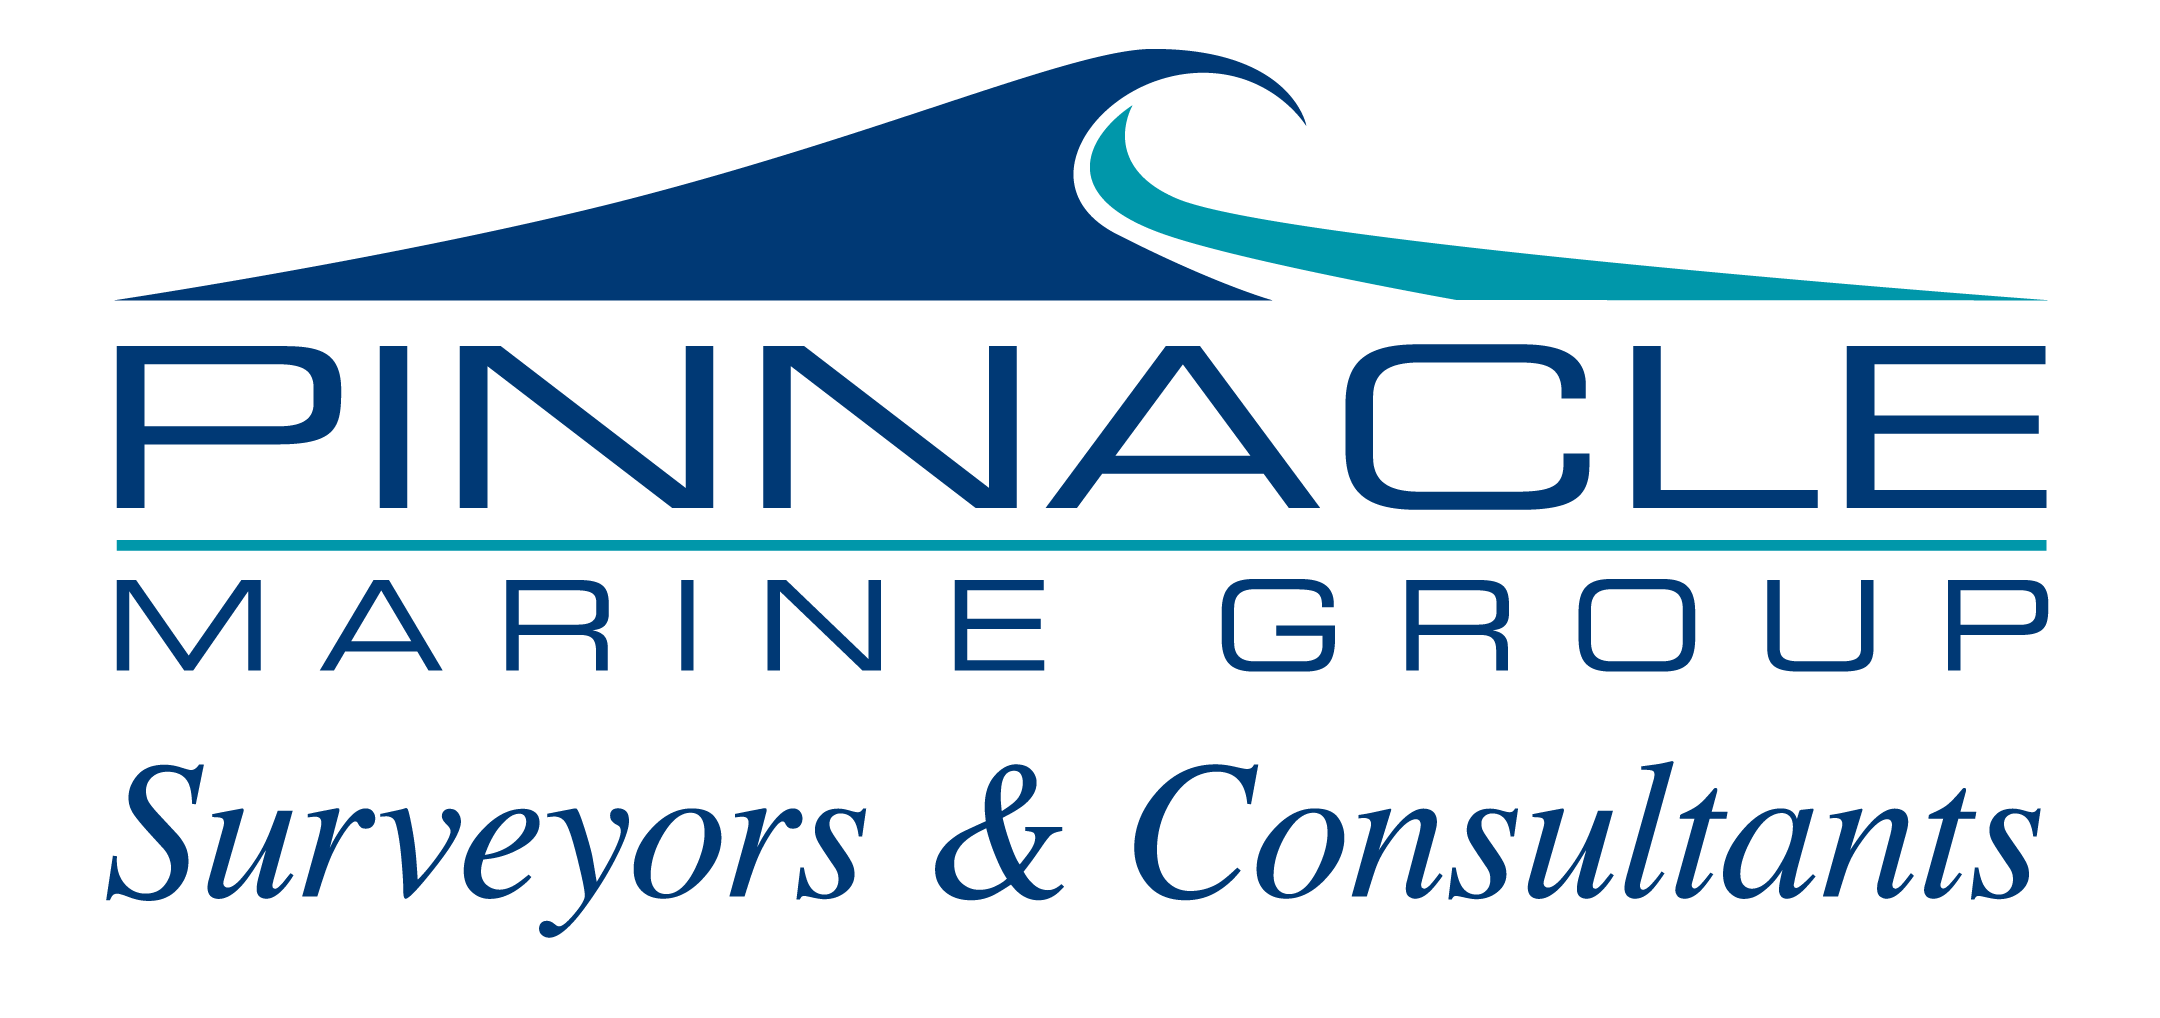 pinnacle marine group logo white back 2.pdf